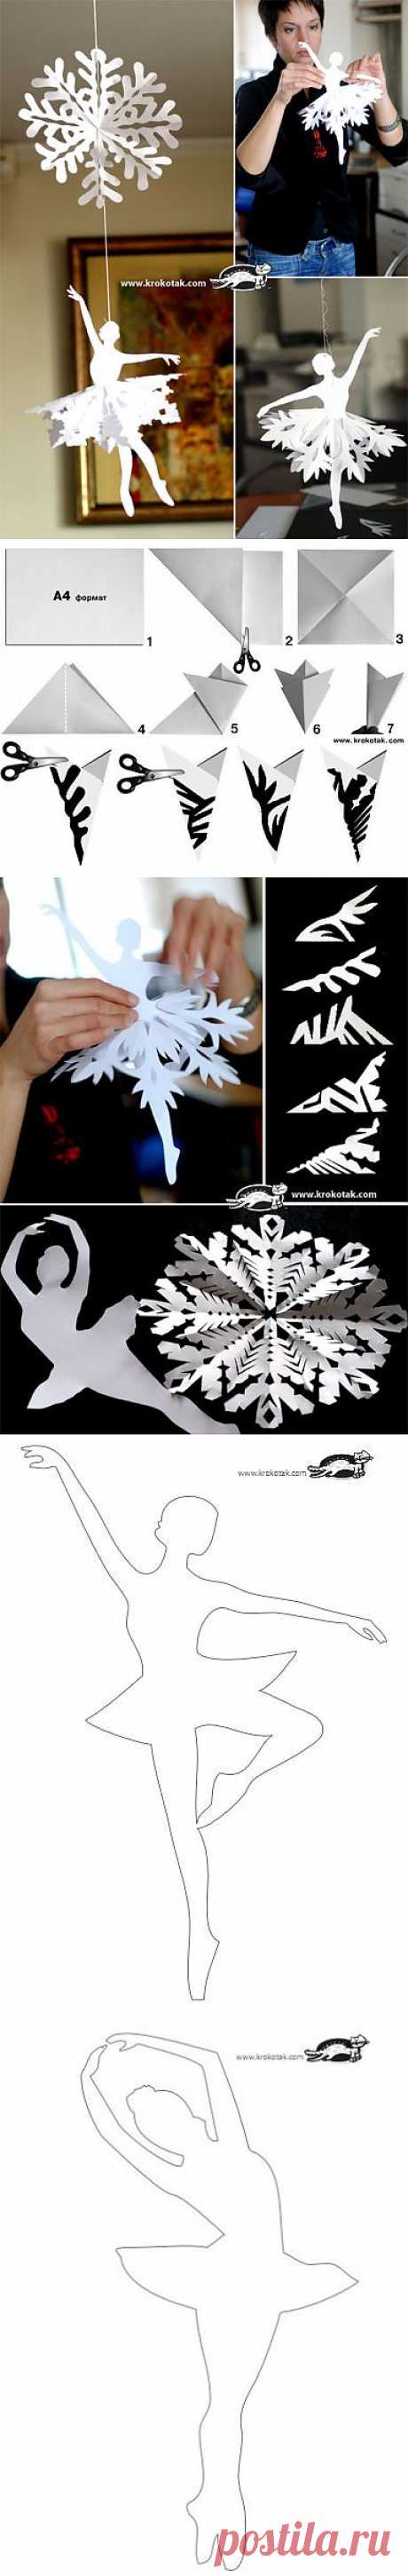 Снежинки - балеринки из бумаги (со схемами и трафаретами).